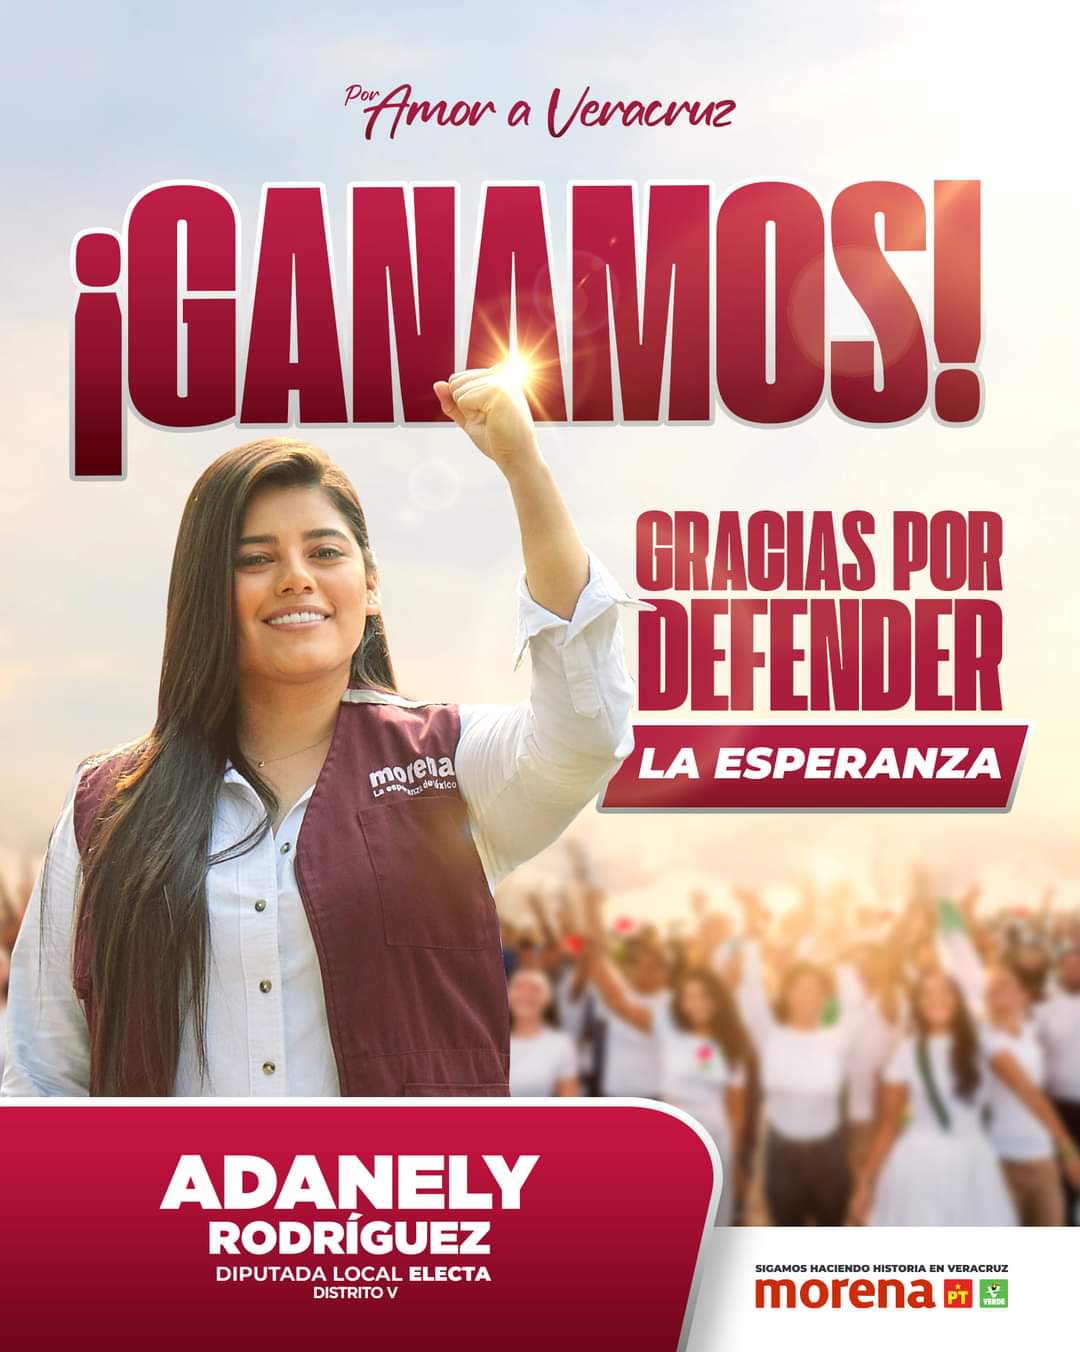 El pueblo decidió por Adanely Rodríguez